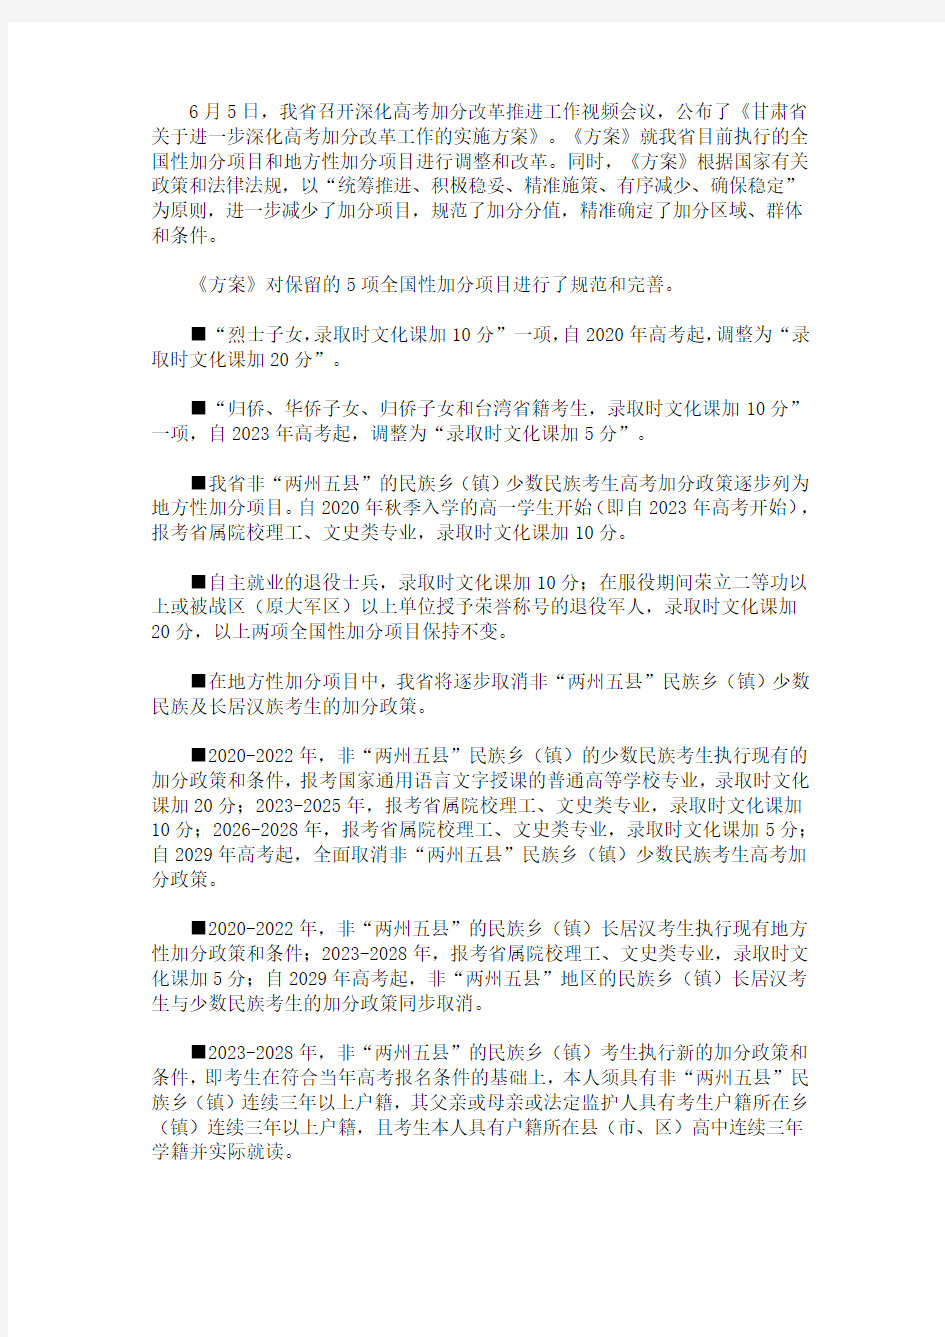 2020甘肃省高考加分改革方案公布(最新)